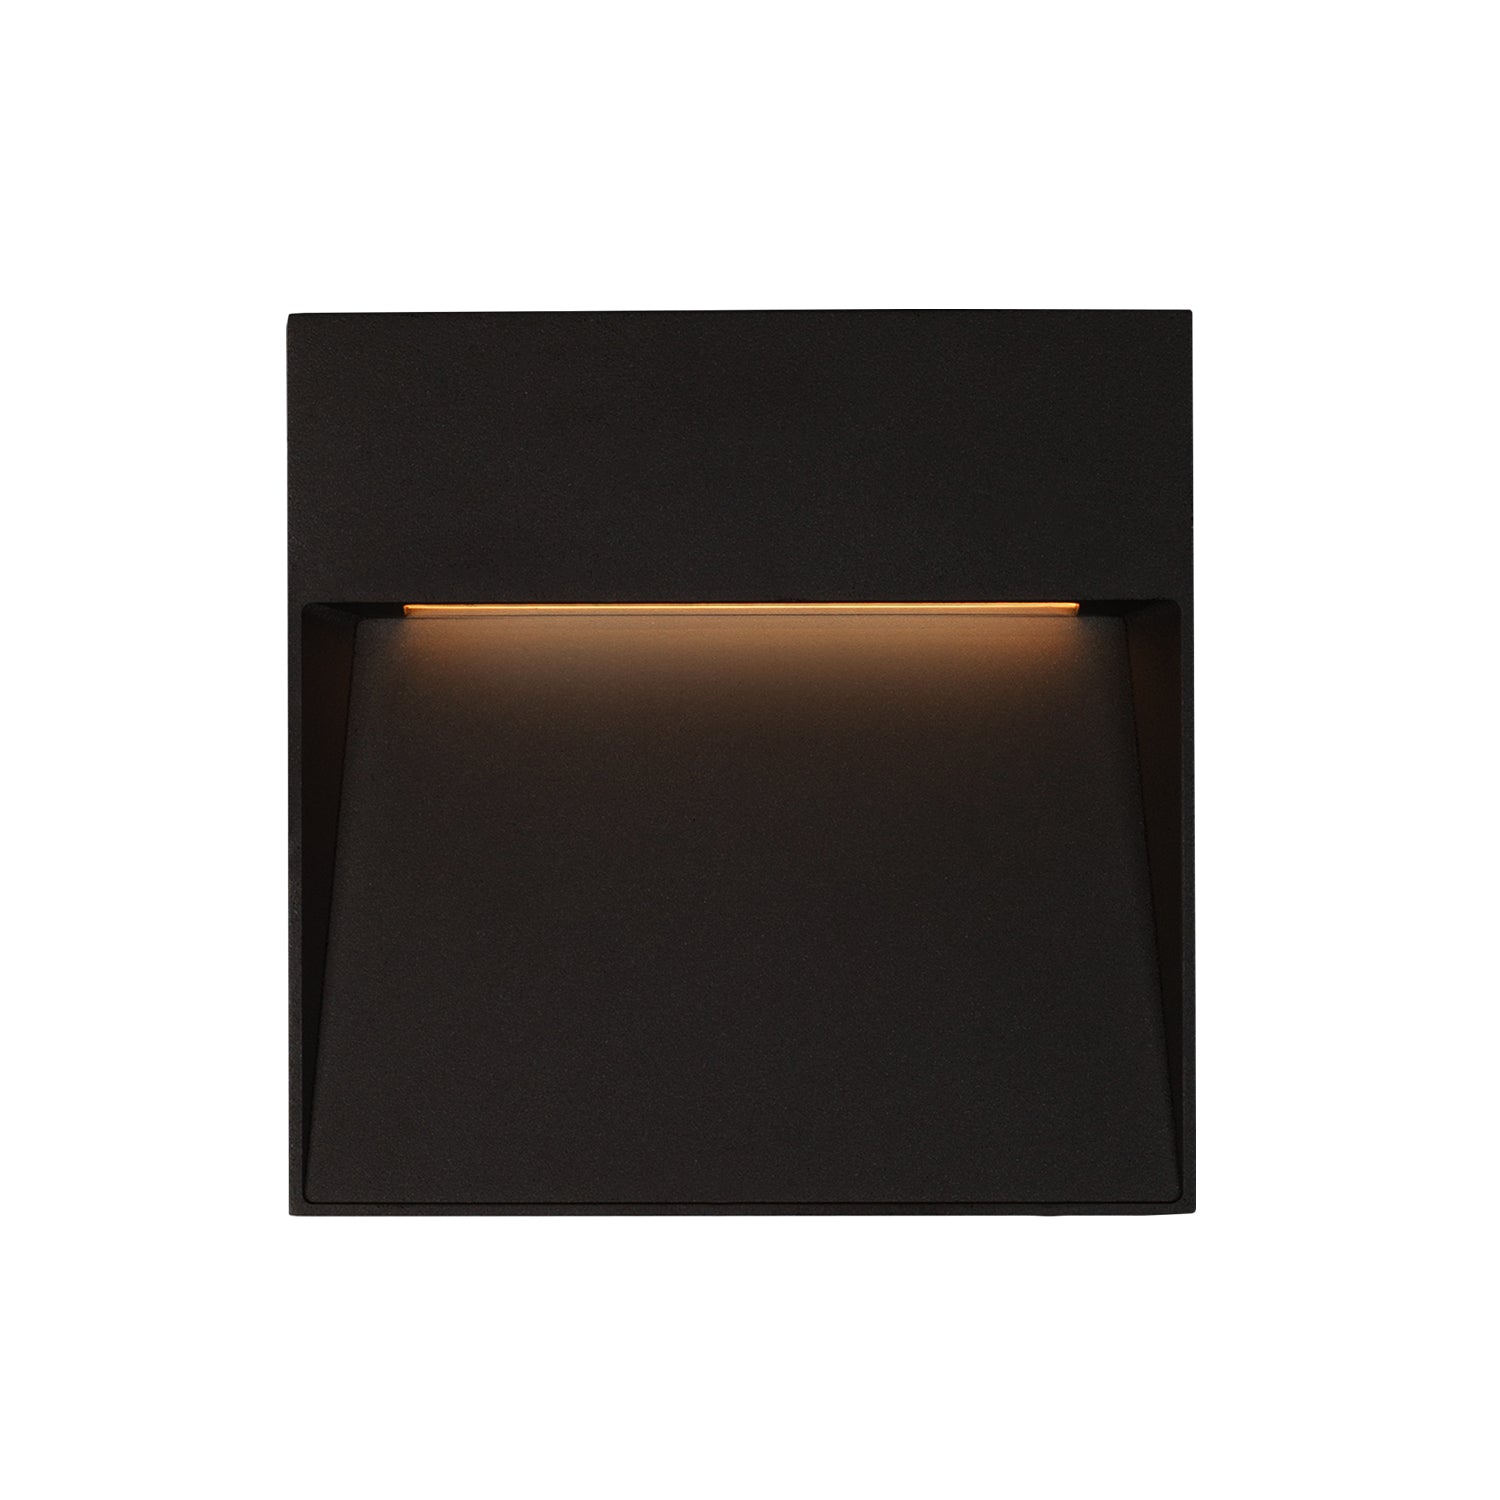 Kuzco Lighting - EW71309-BK - LED Wall Sconce - Casa - Black